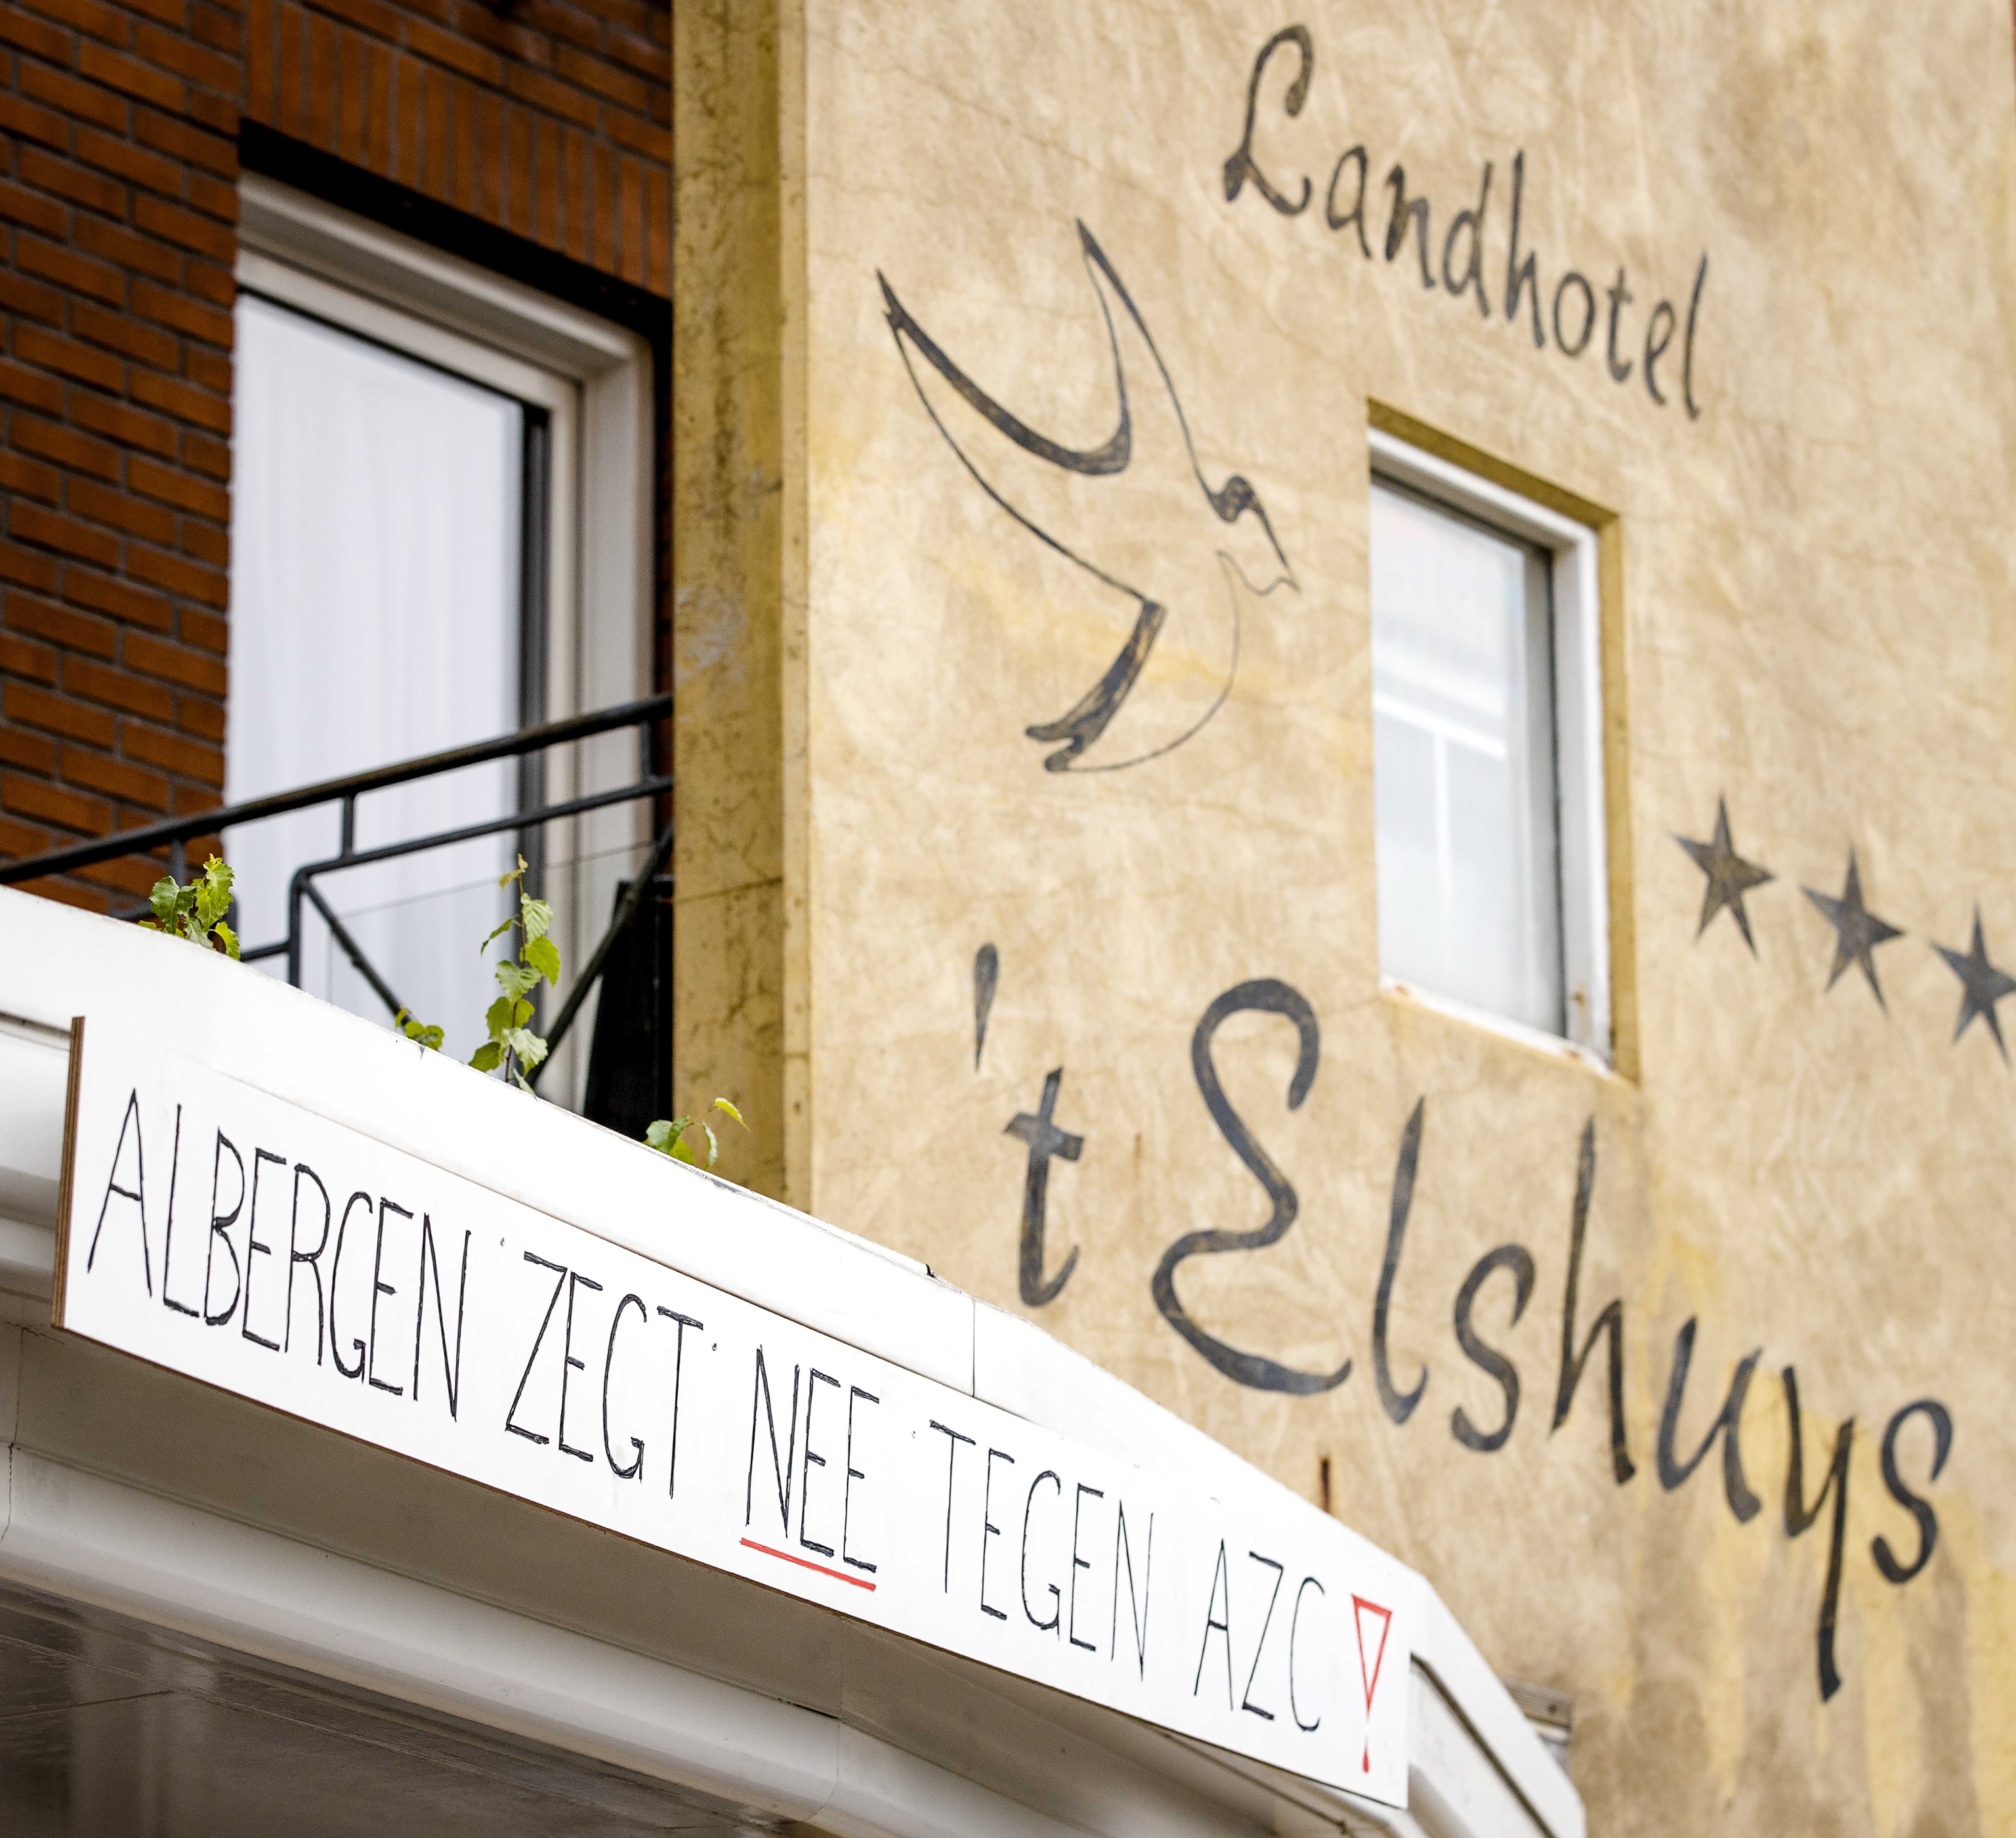 "Albergen dice no al centro de asilo", se lee en la pancarta de la fachada del hotel.